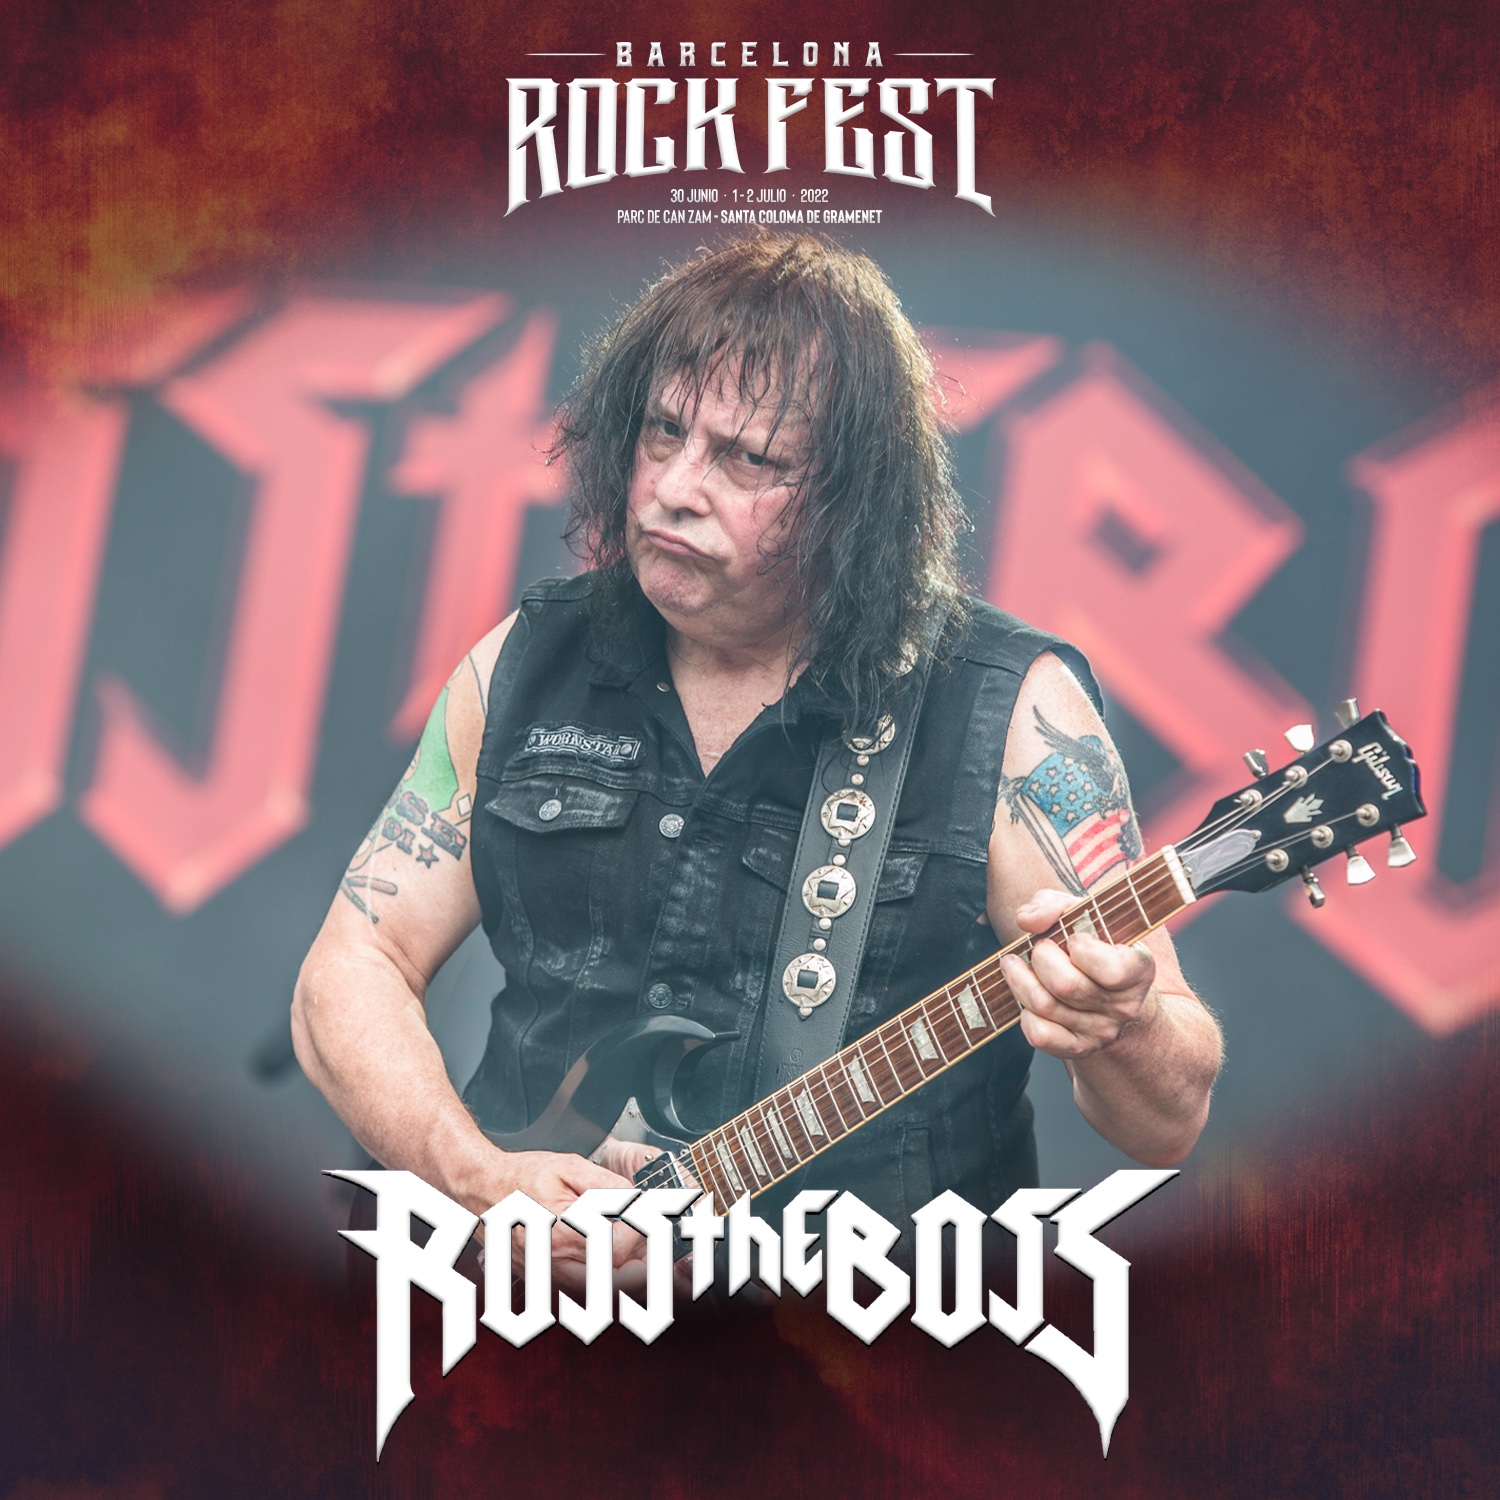 barcelona rock fest - ross the boss